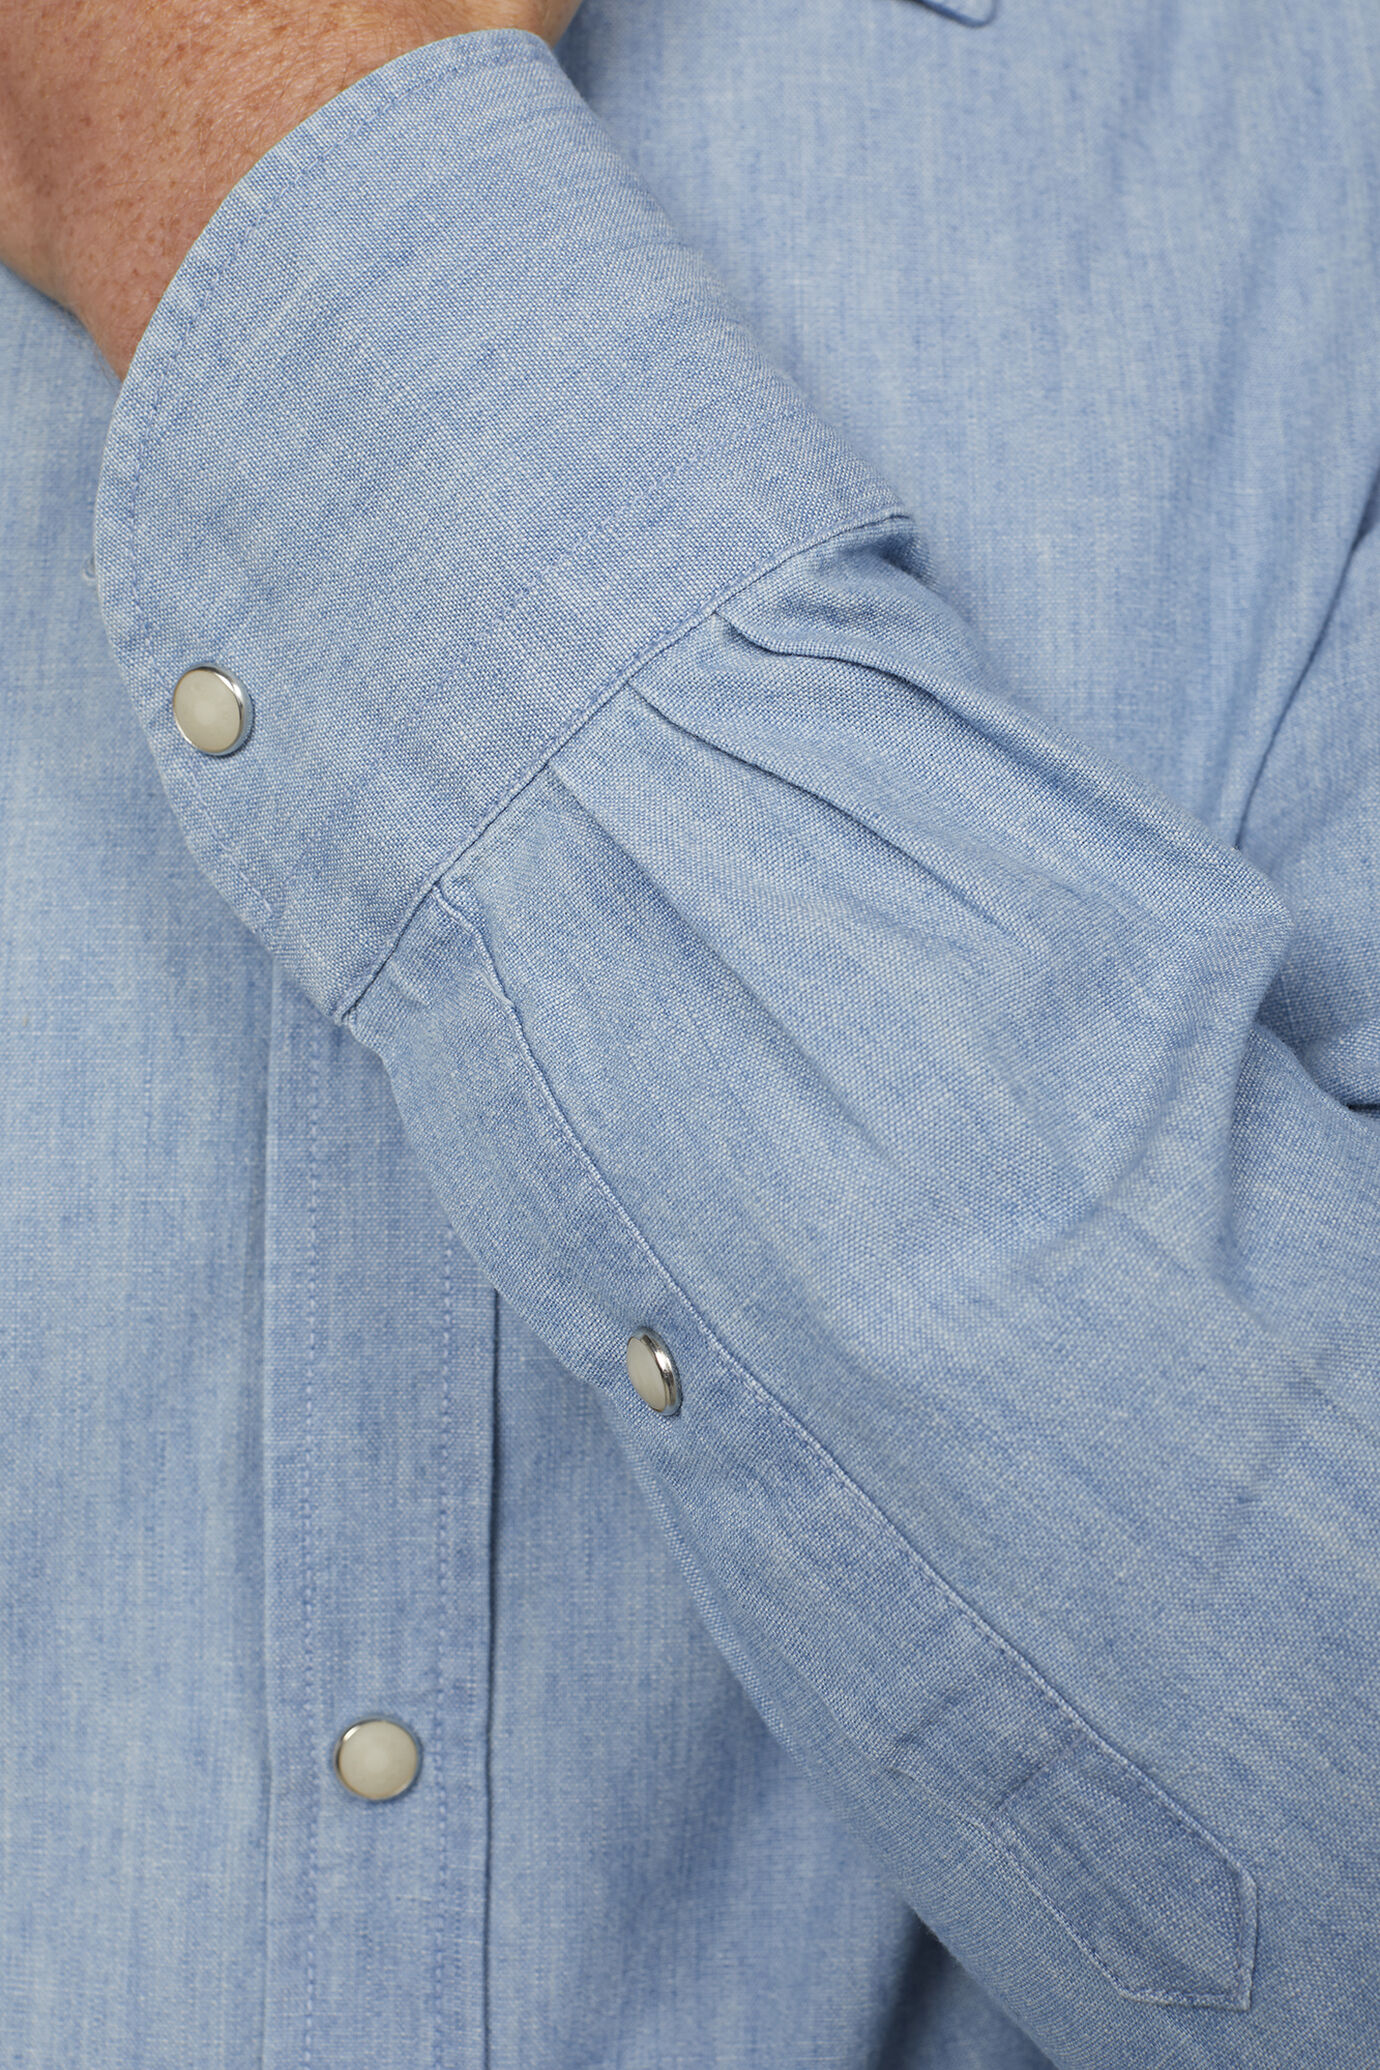 Camicia casual uomo collo classico 100% cotone tessuto chambray denim chiaro comfort fit image number 4